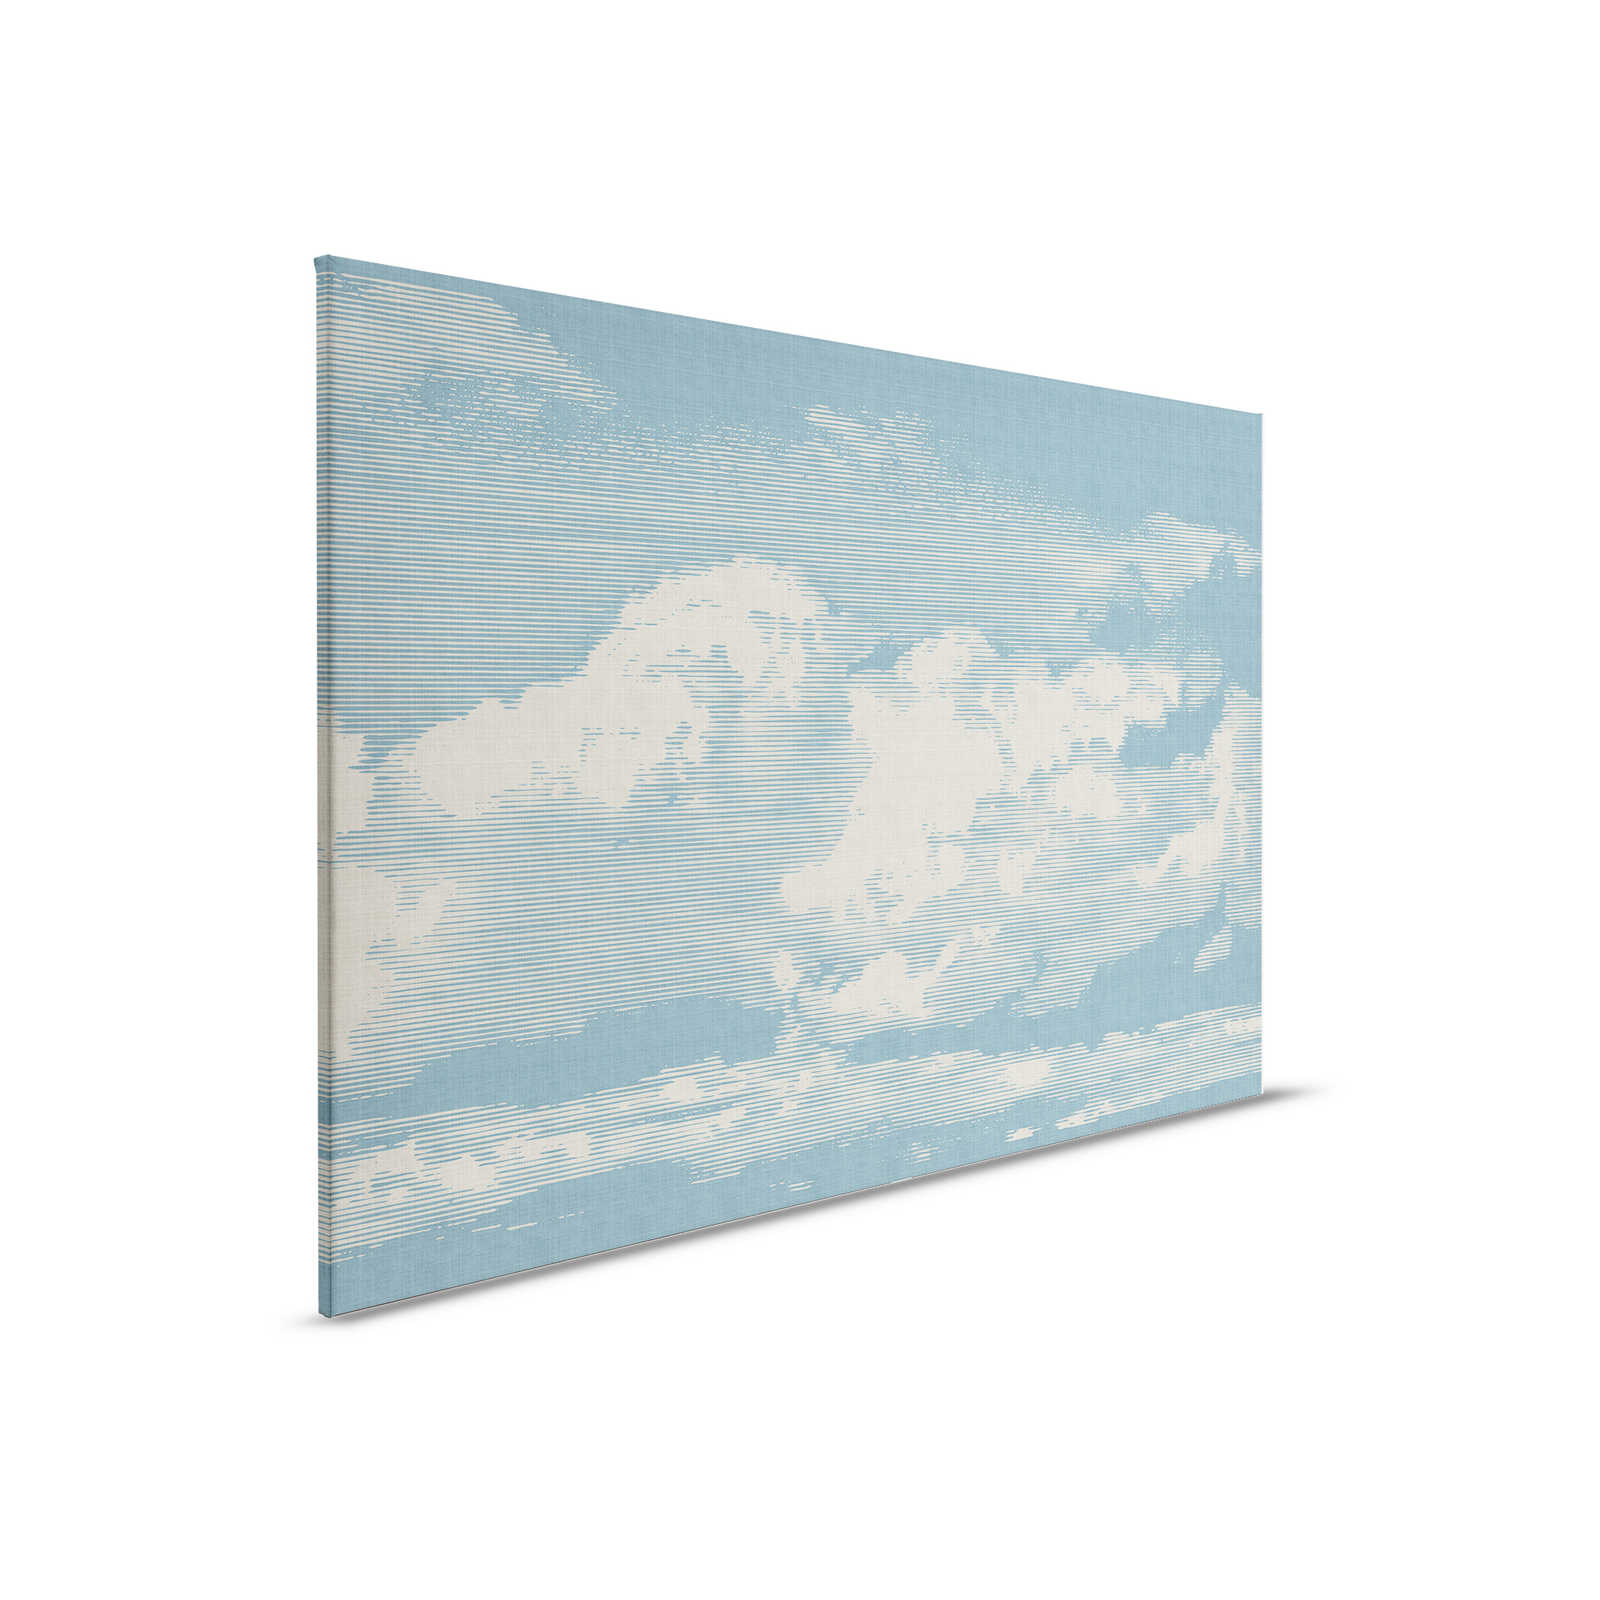 Clouds 1 - Himmlisches Leinwandbild mit Wolkenmotiv in naturleinen Optik – 0,90 m x 0,60 m
